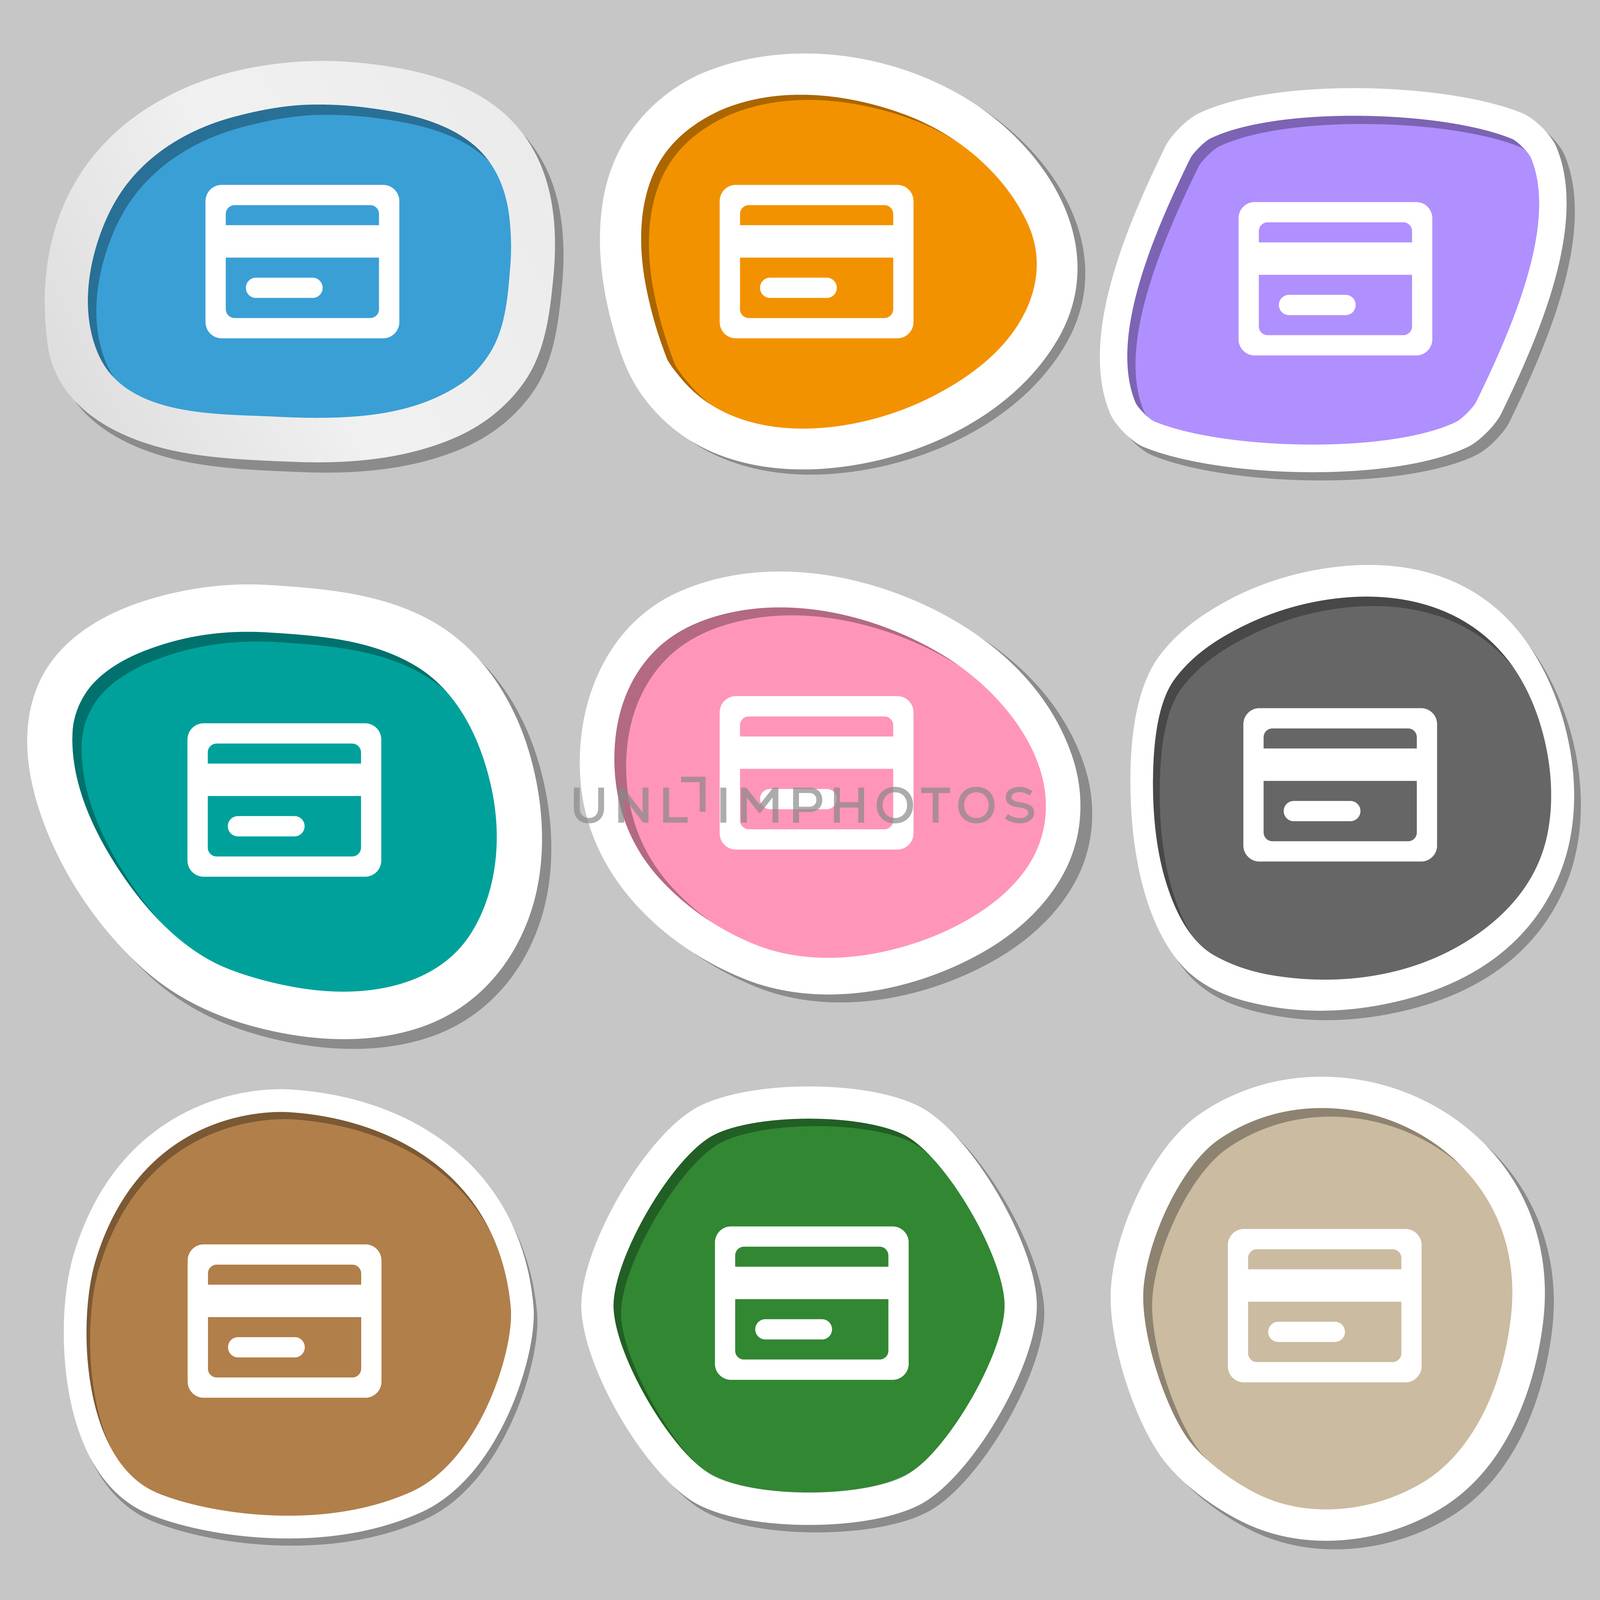 credit card icon symbols. Multicolored paper stickers. illustration